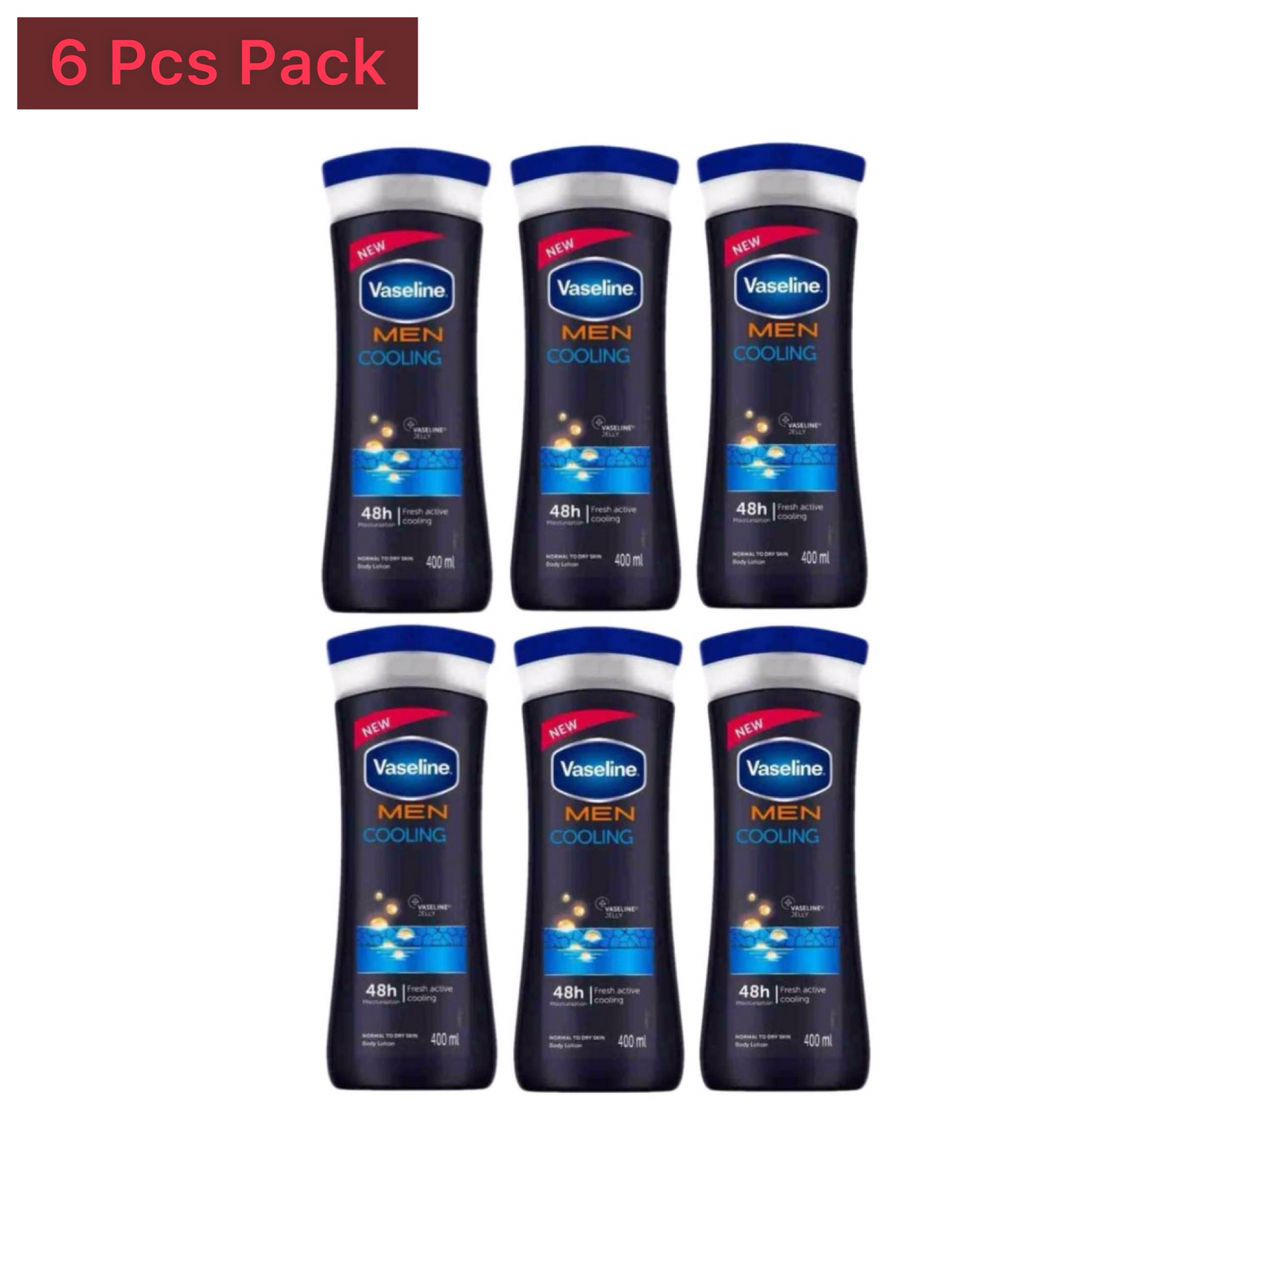 6 Pcs Bundle  Men Cooling body lotion Vaseline (6X400ml) (Cargo)